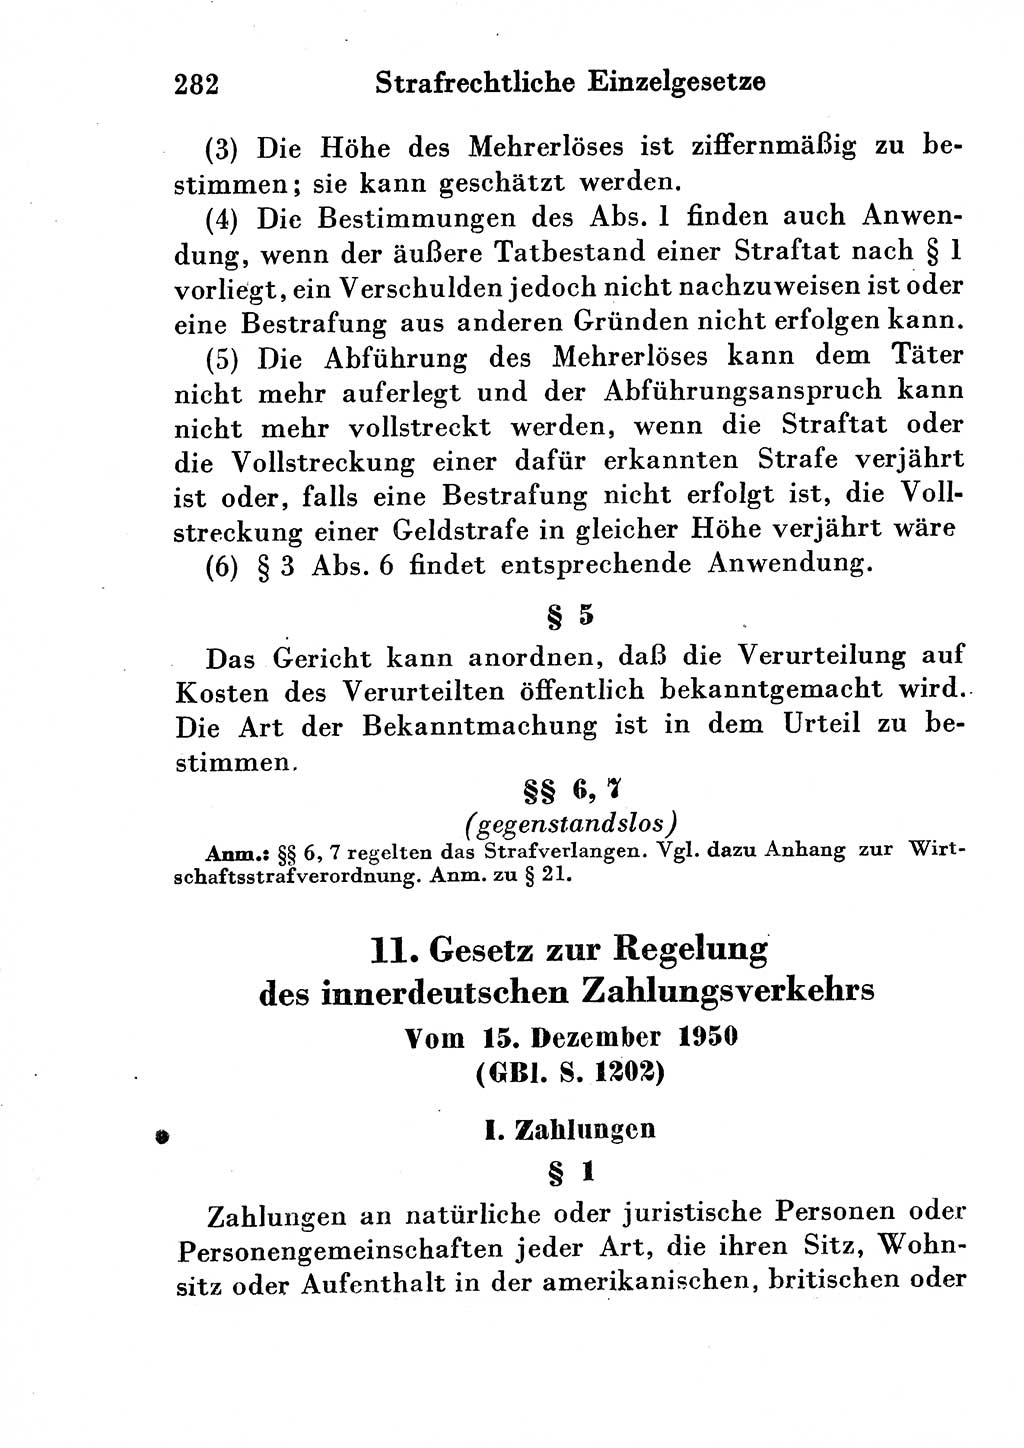 Strafgesetzbuch (StGB) und andere Strafgesetze [Deutsche Demokratische Republik (DDR)] 1954, Seite 282 (StGB Strafges. DDR 1954, S. 282)